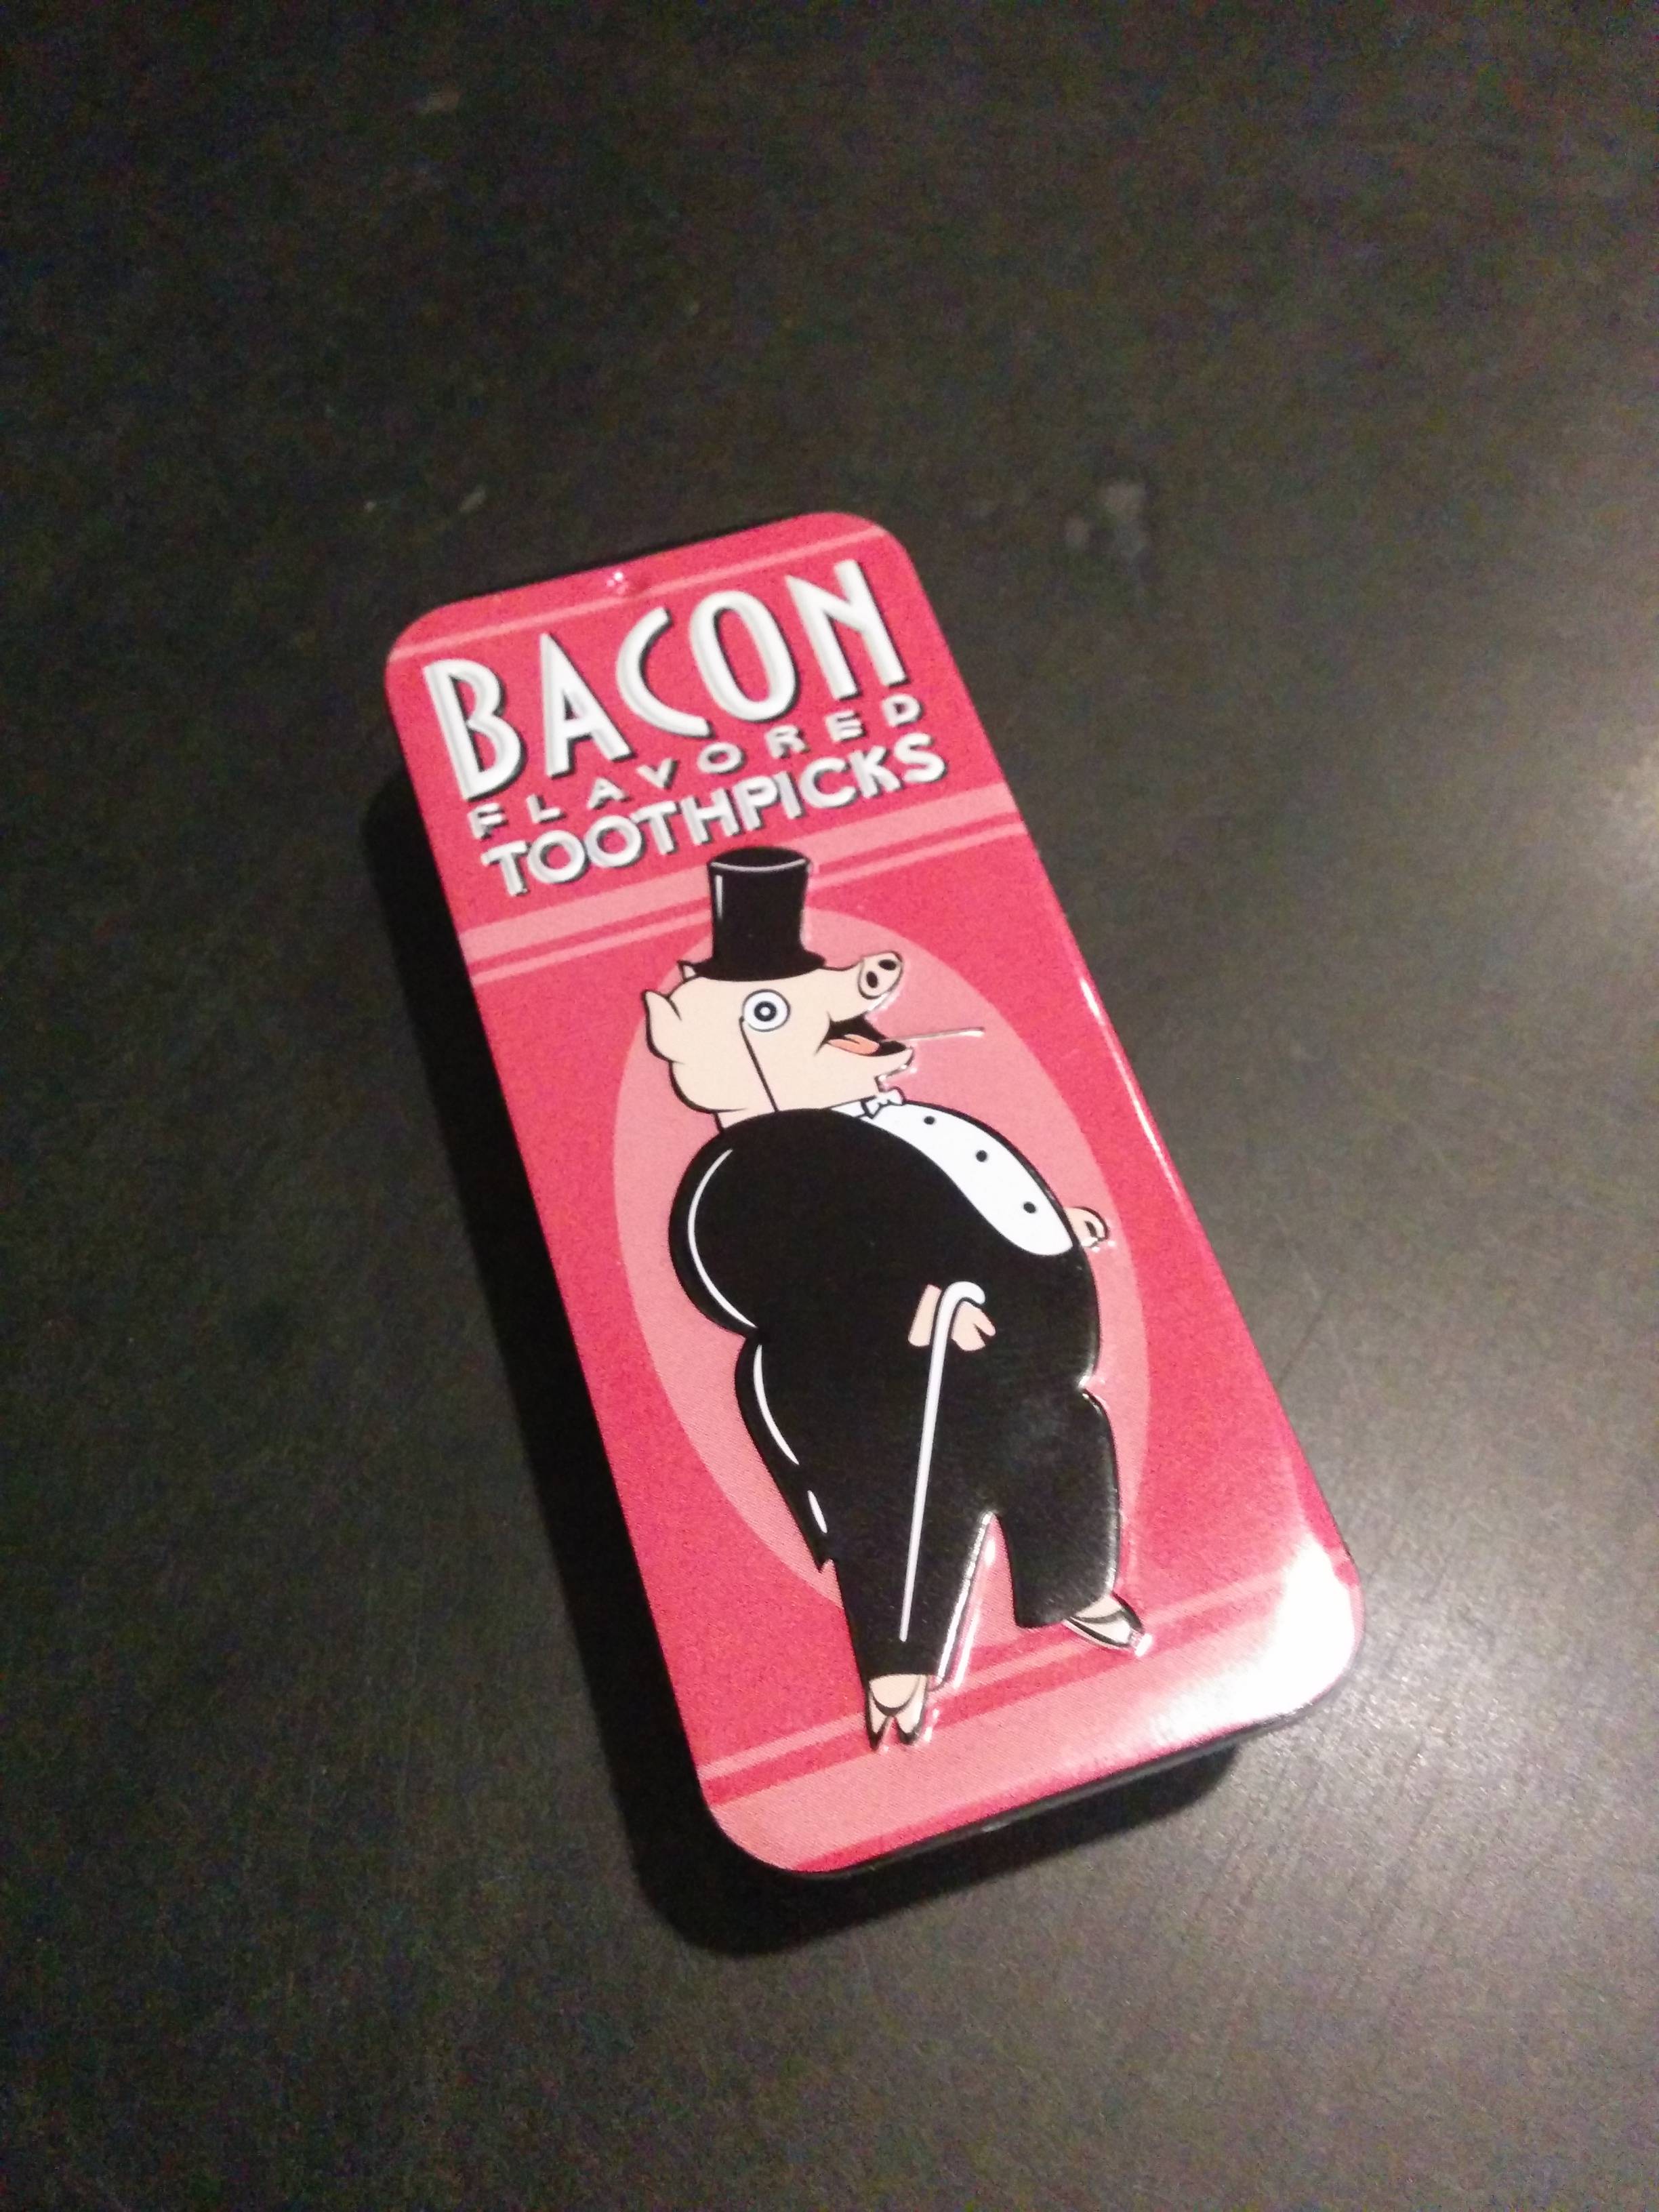 lighter - Bacon Toothpicks